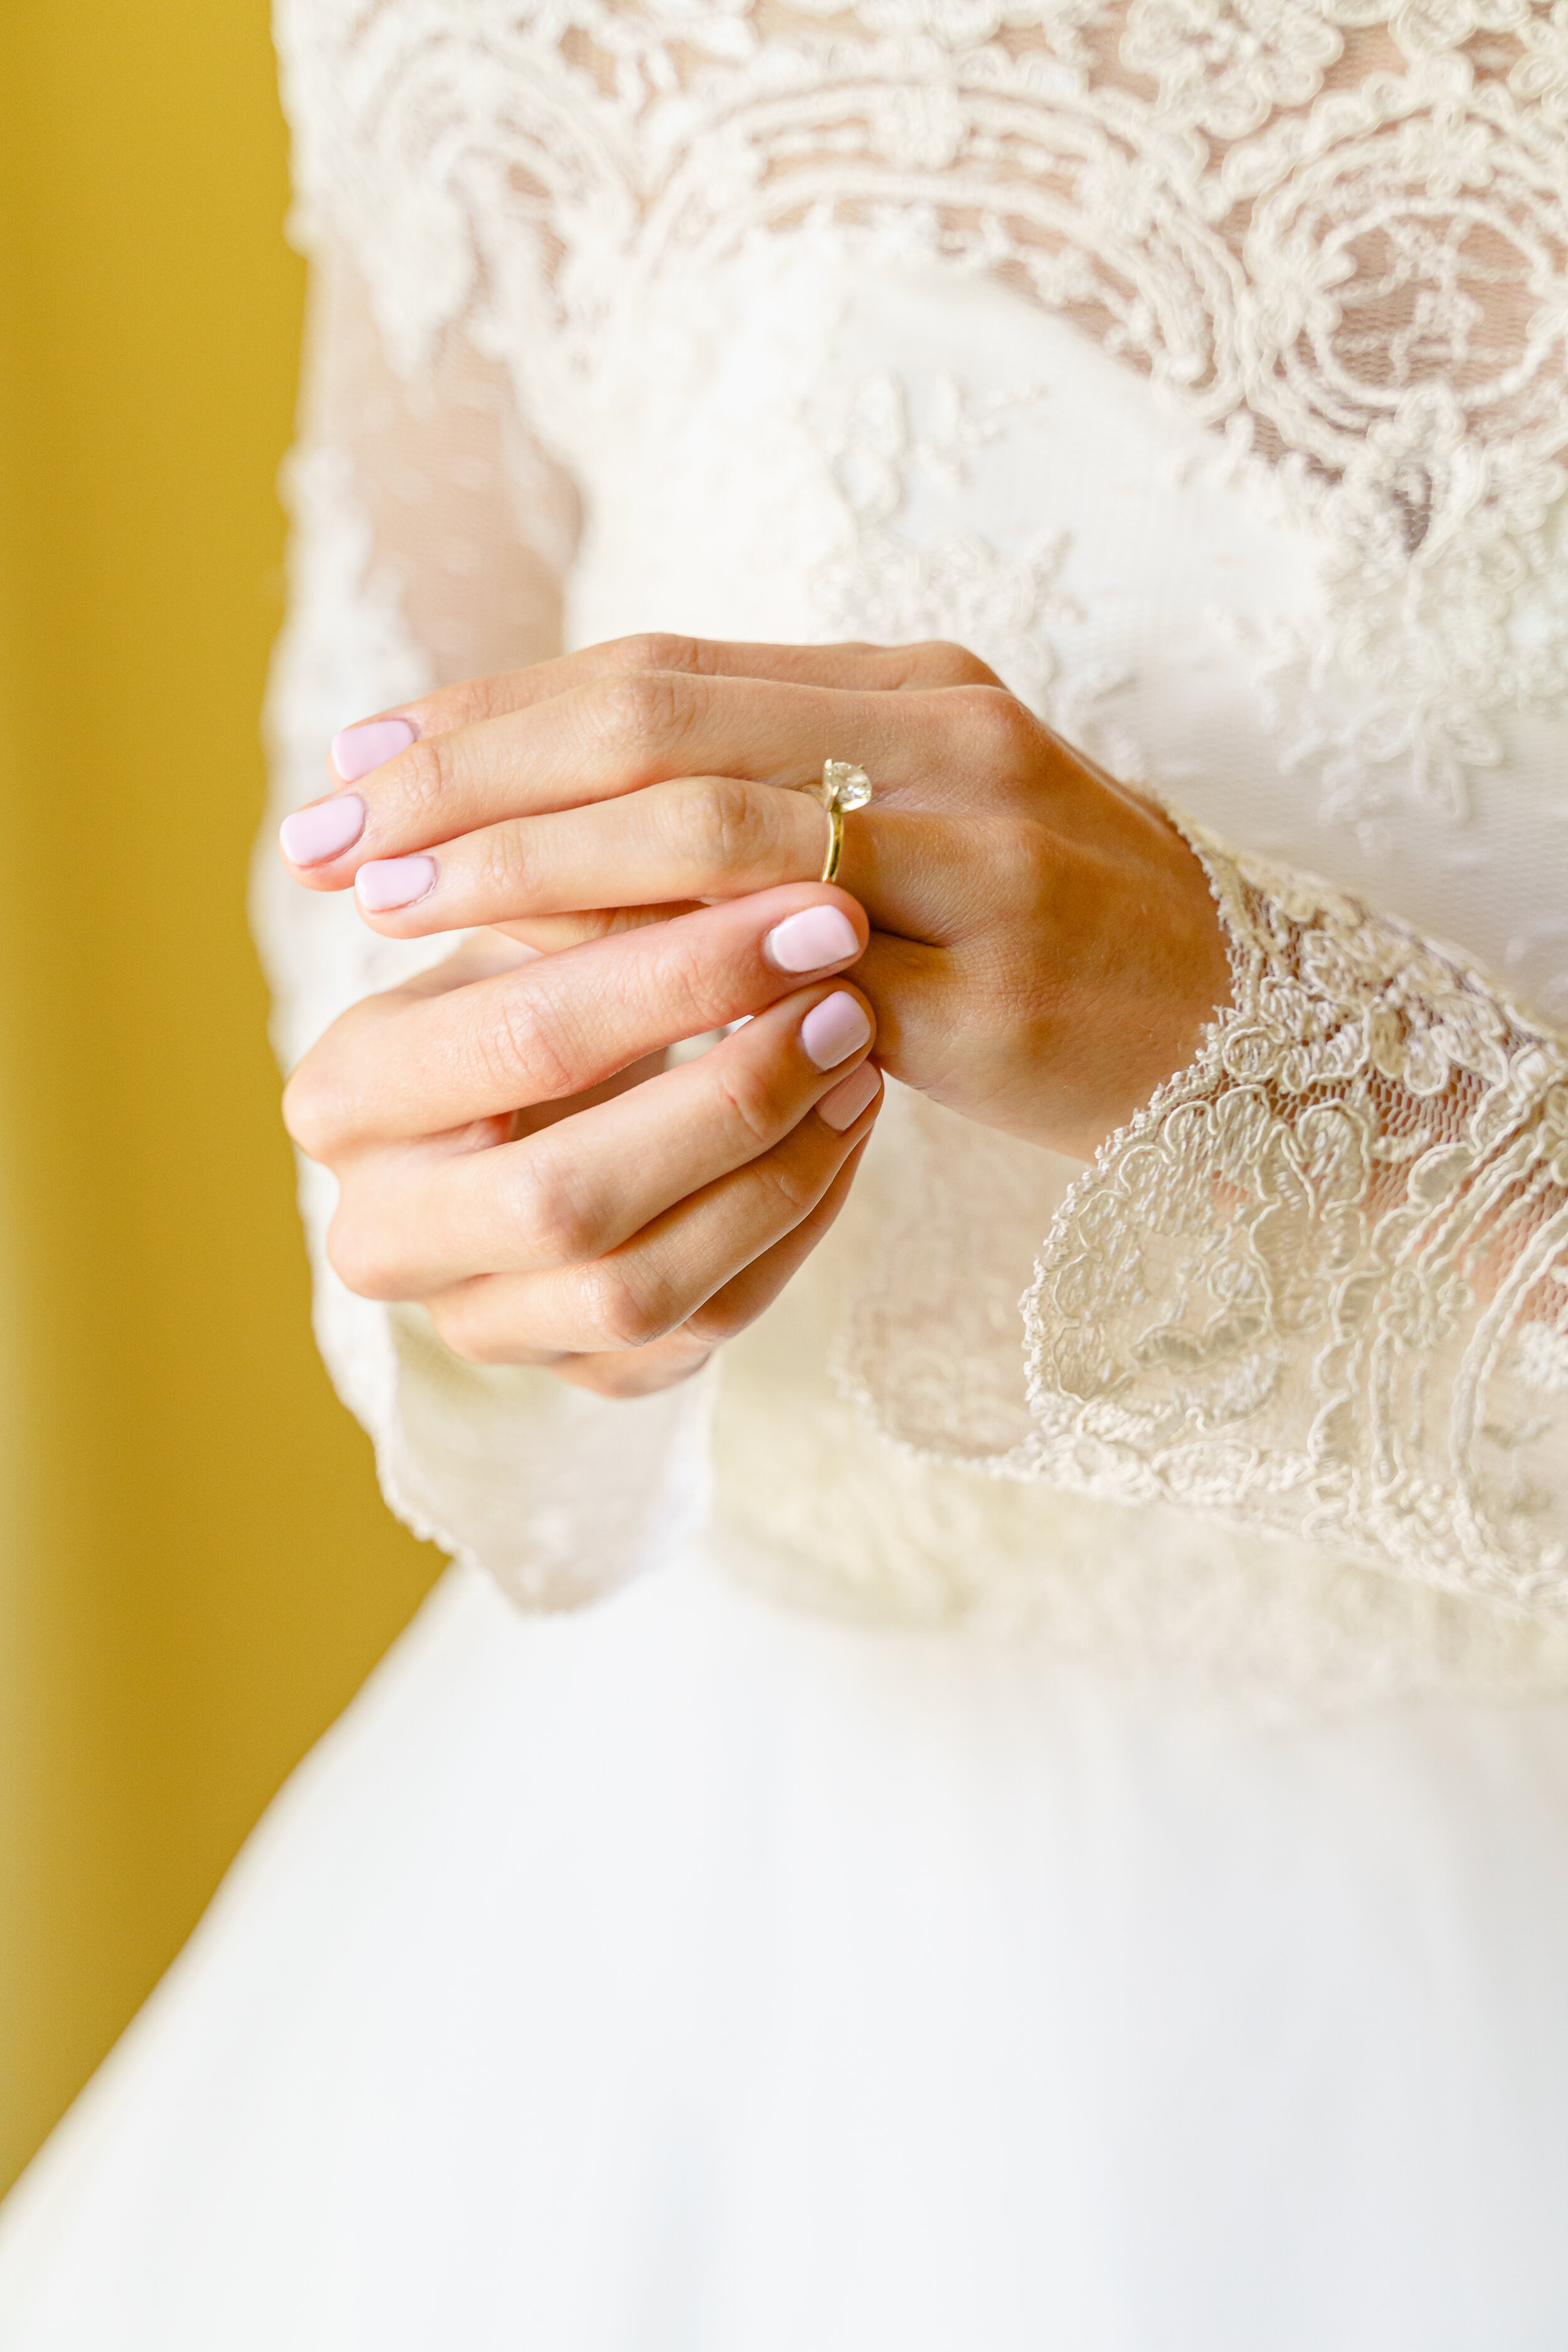 Classic Bridal Details for Elegant Catholic Wedding